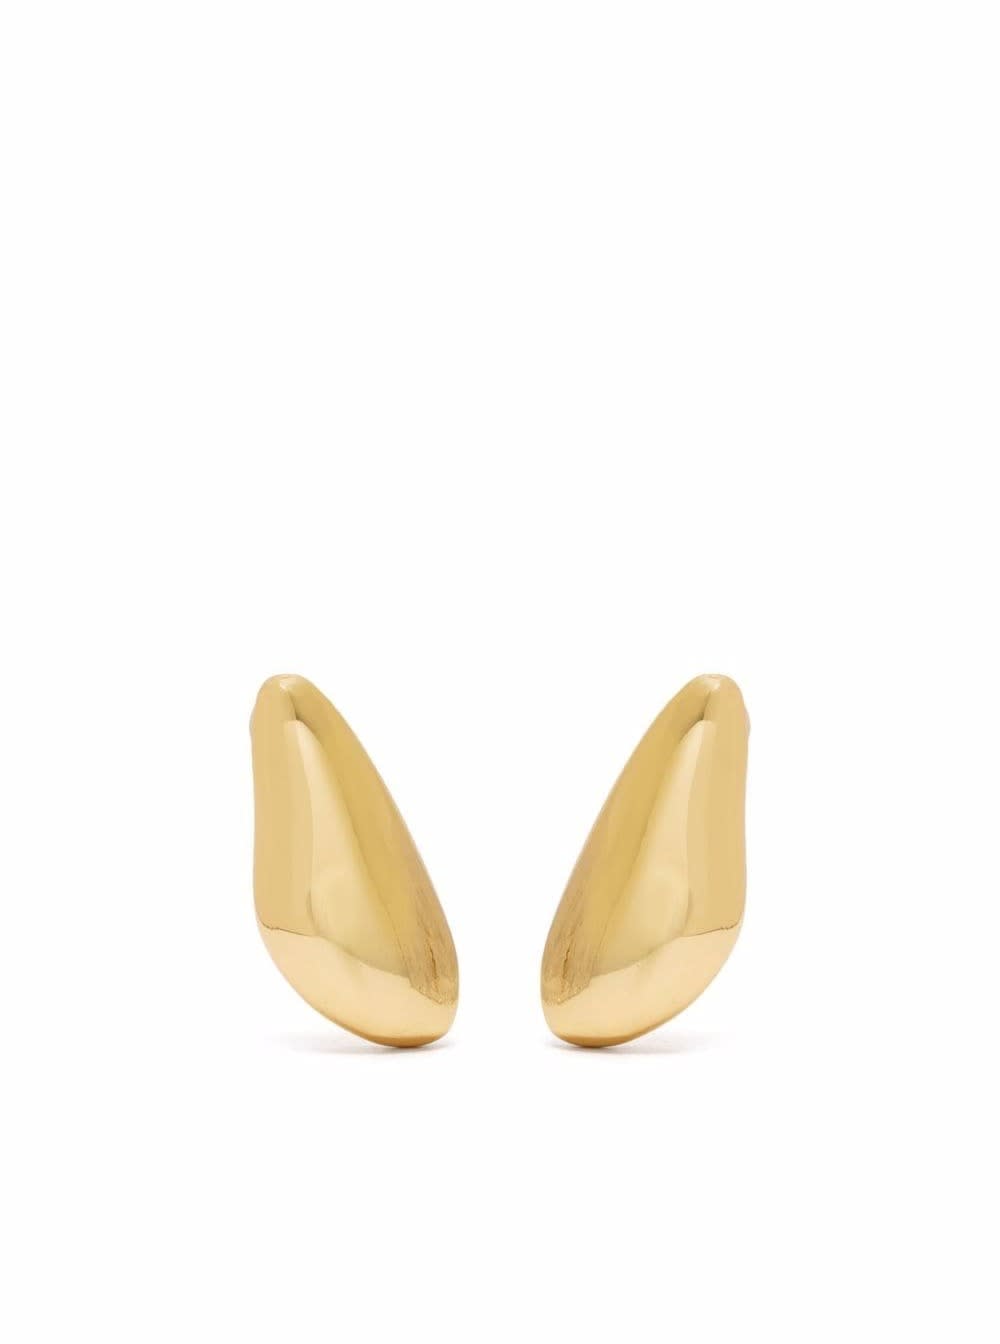 Federica Tosi Lobo Drop Brass Earrings